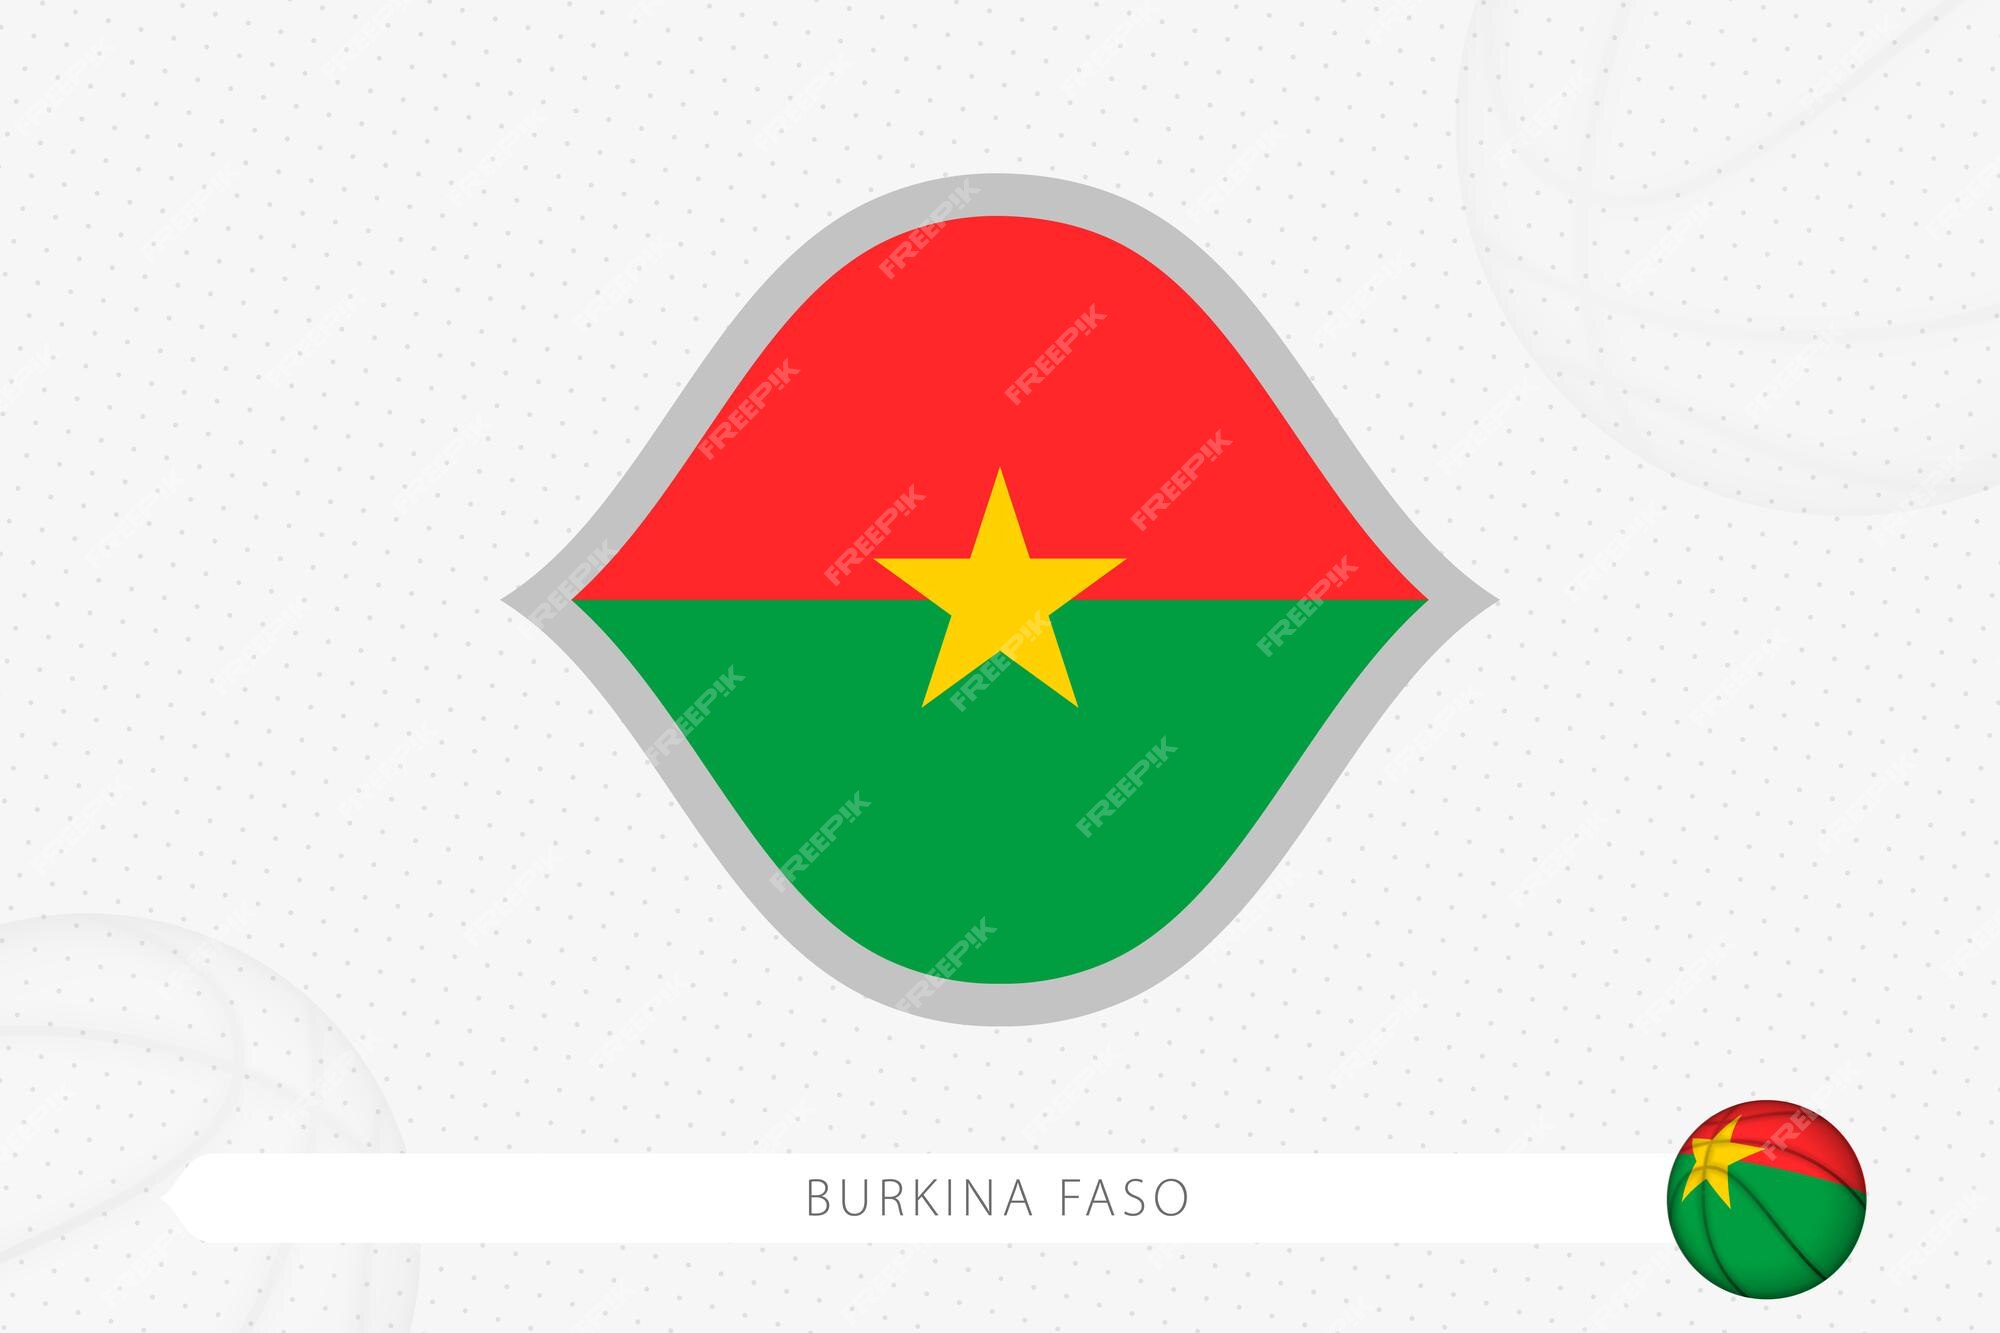 Cờ Burkina Faso đã được thiết kế với các màu sắc tươi sáng, truyền tải thông điệp về sự giàu có và đa dạng của đất nước này. Hãy nhìn vào hình ảnh và khám phá thêm về Quốc kỳ Burkina Faso!